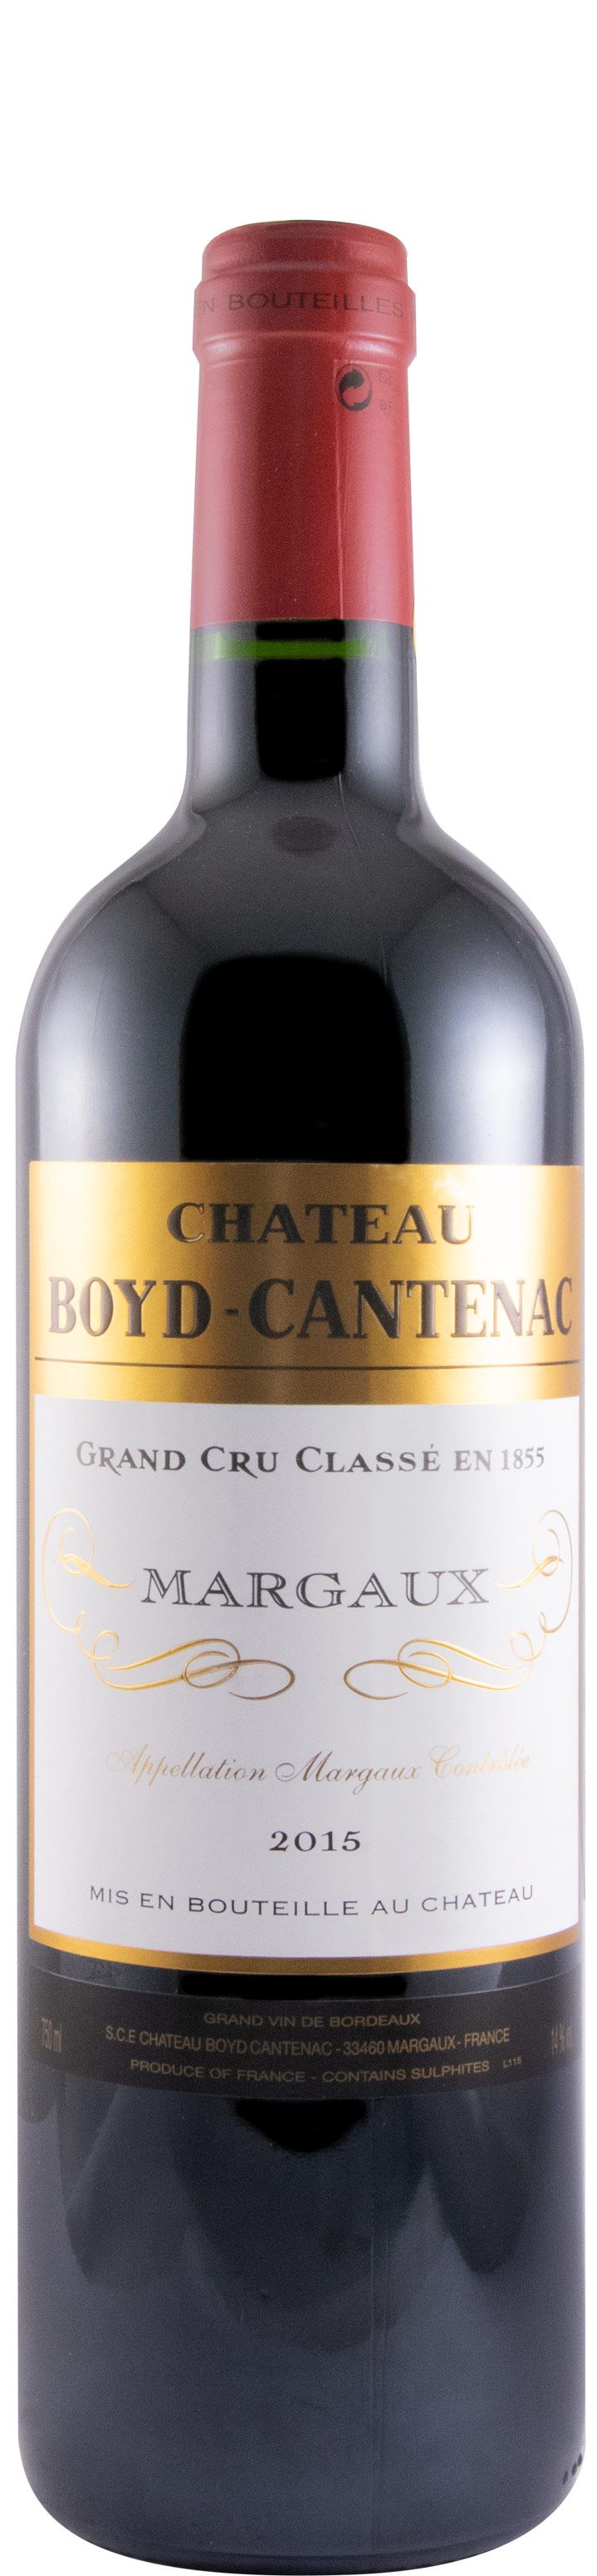 2015 Château Boyd-Cantenac Margaux red